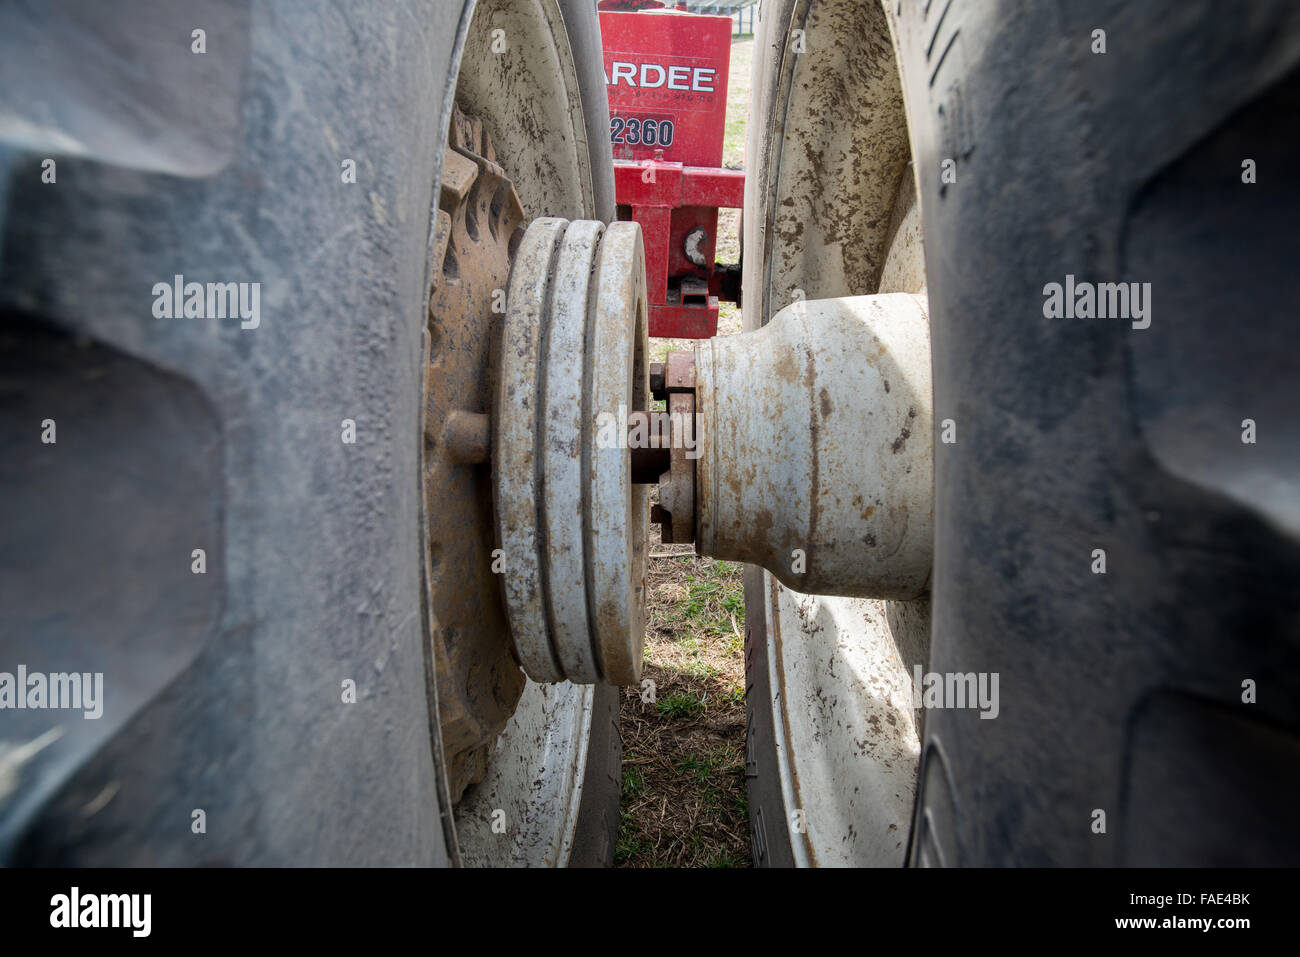 Cerca de las ruedas de un tractor John Deere Foto de stock